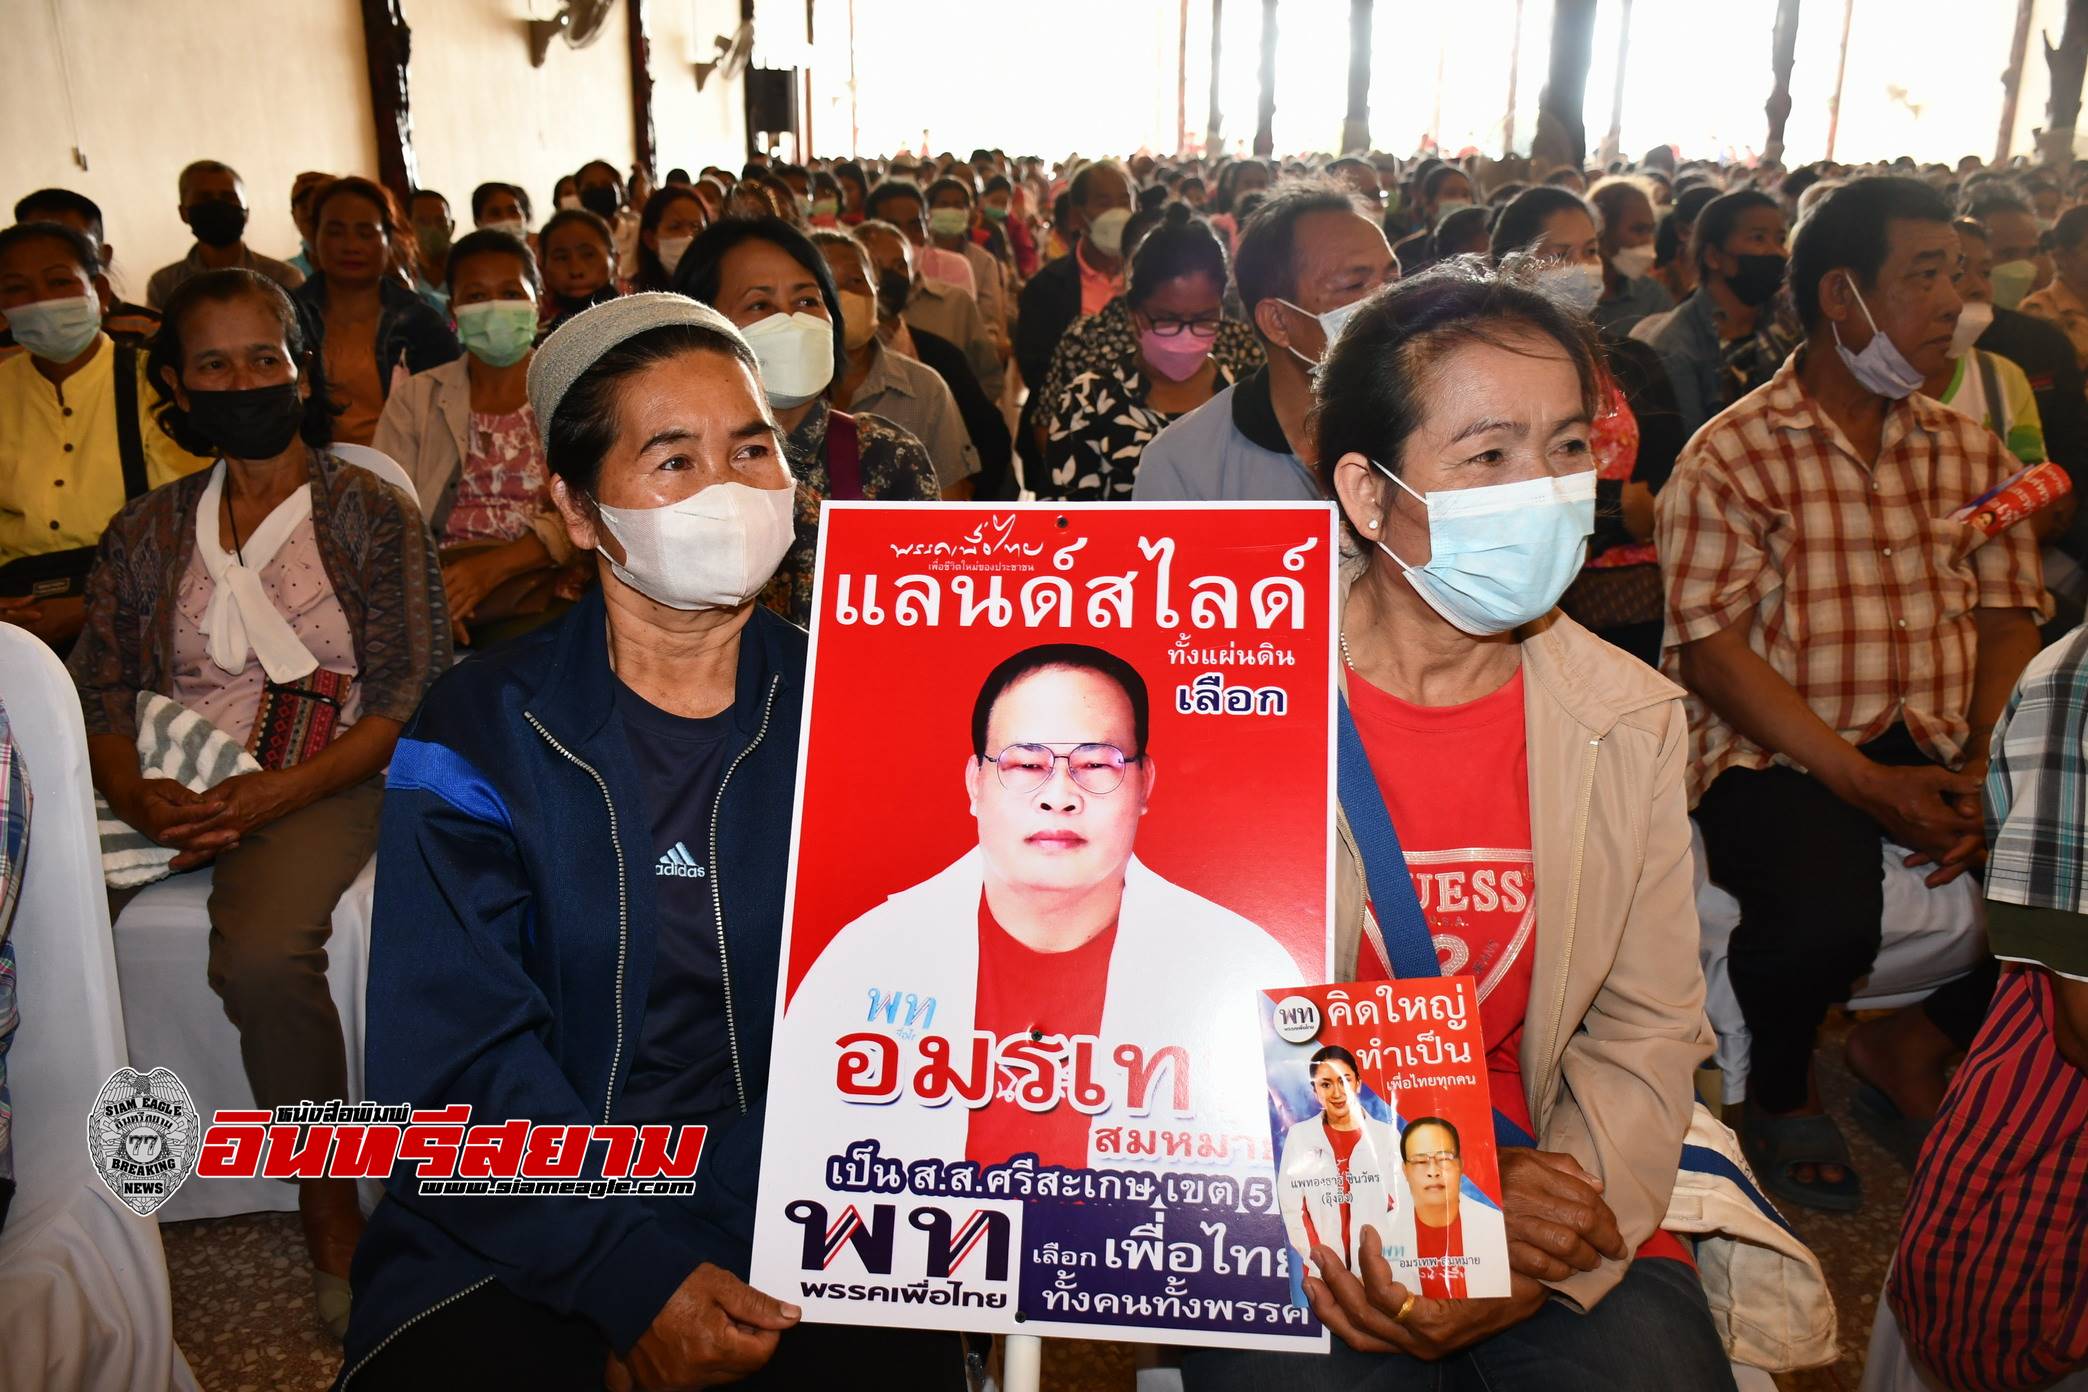 ศรีสะเกษ-“อมรเทพ สมหมาย”รวมกลุ่มเสื้อแดงกว่า 1,000 คน ชี้แจงนโยบายพรรคเพื่อไทย